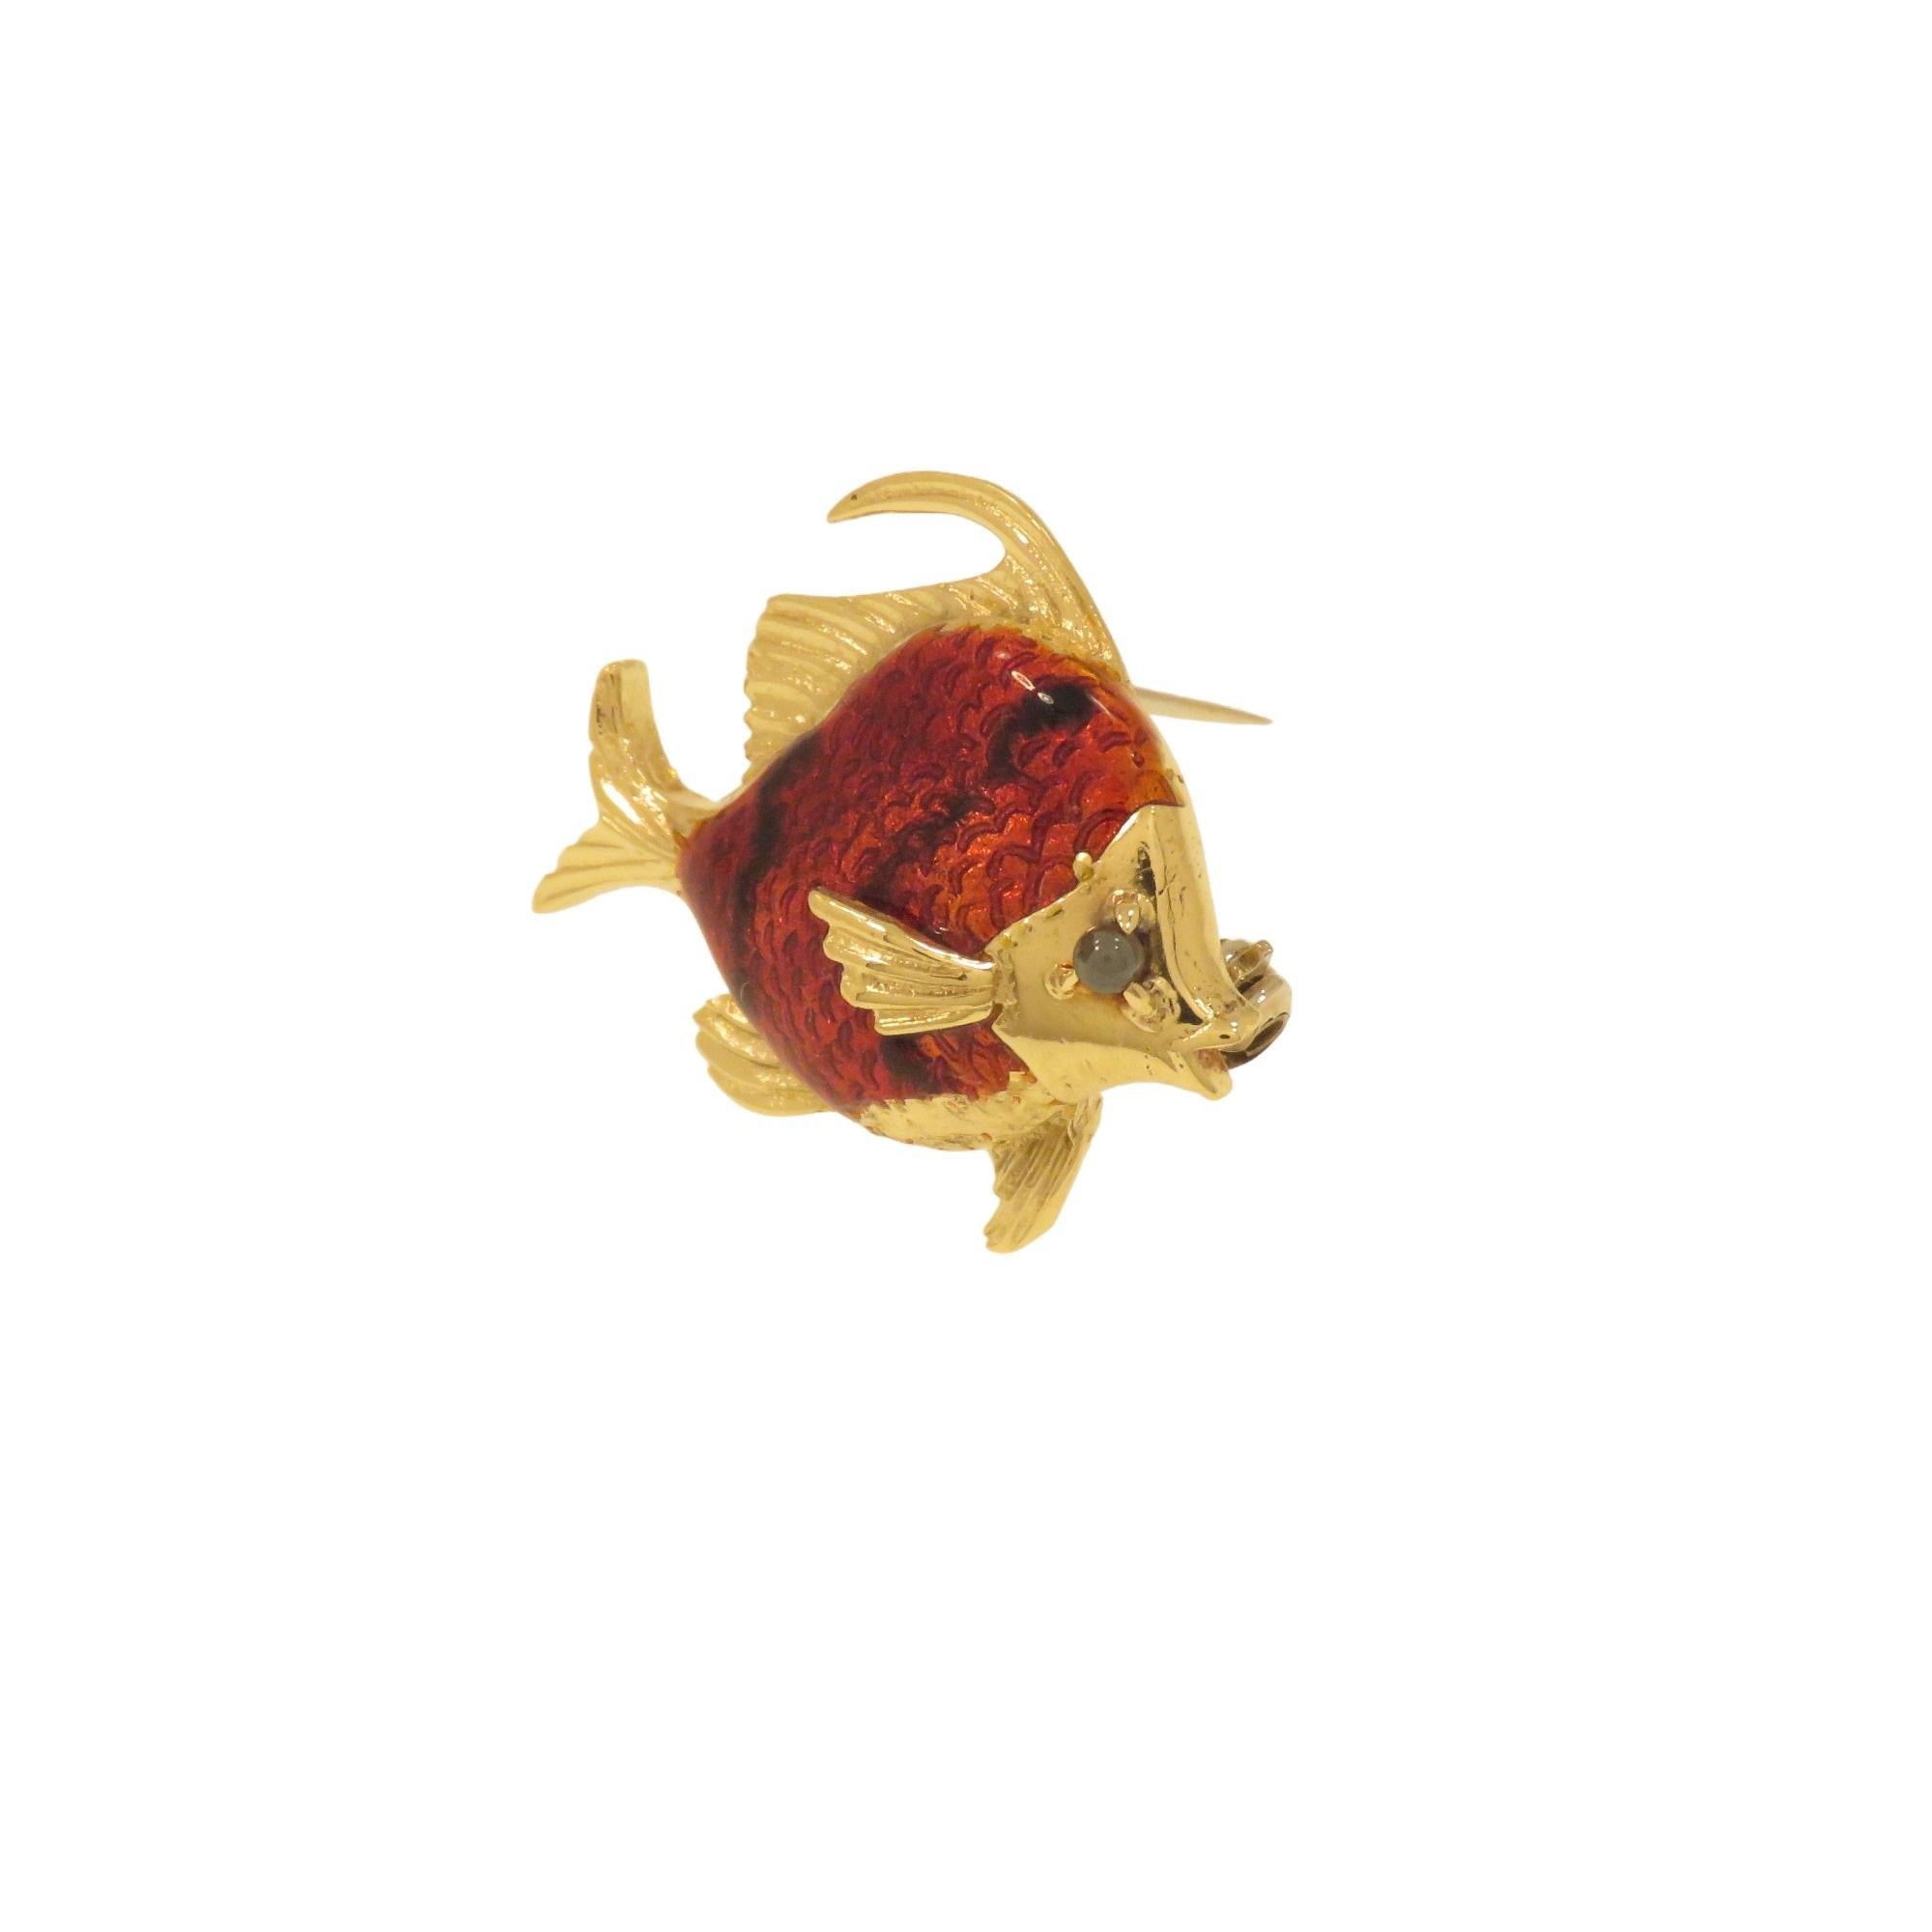 Cette jolie broche, fabriquée à la main en Italie entre 1960 et 1970, représente un poisson aux couleurs réalistes. Le corps est en or jaune 18 carats avec émaillage au feu, et l'œil est orné d'une sphère de tourmaline verte. La broche est marquée